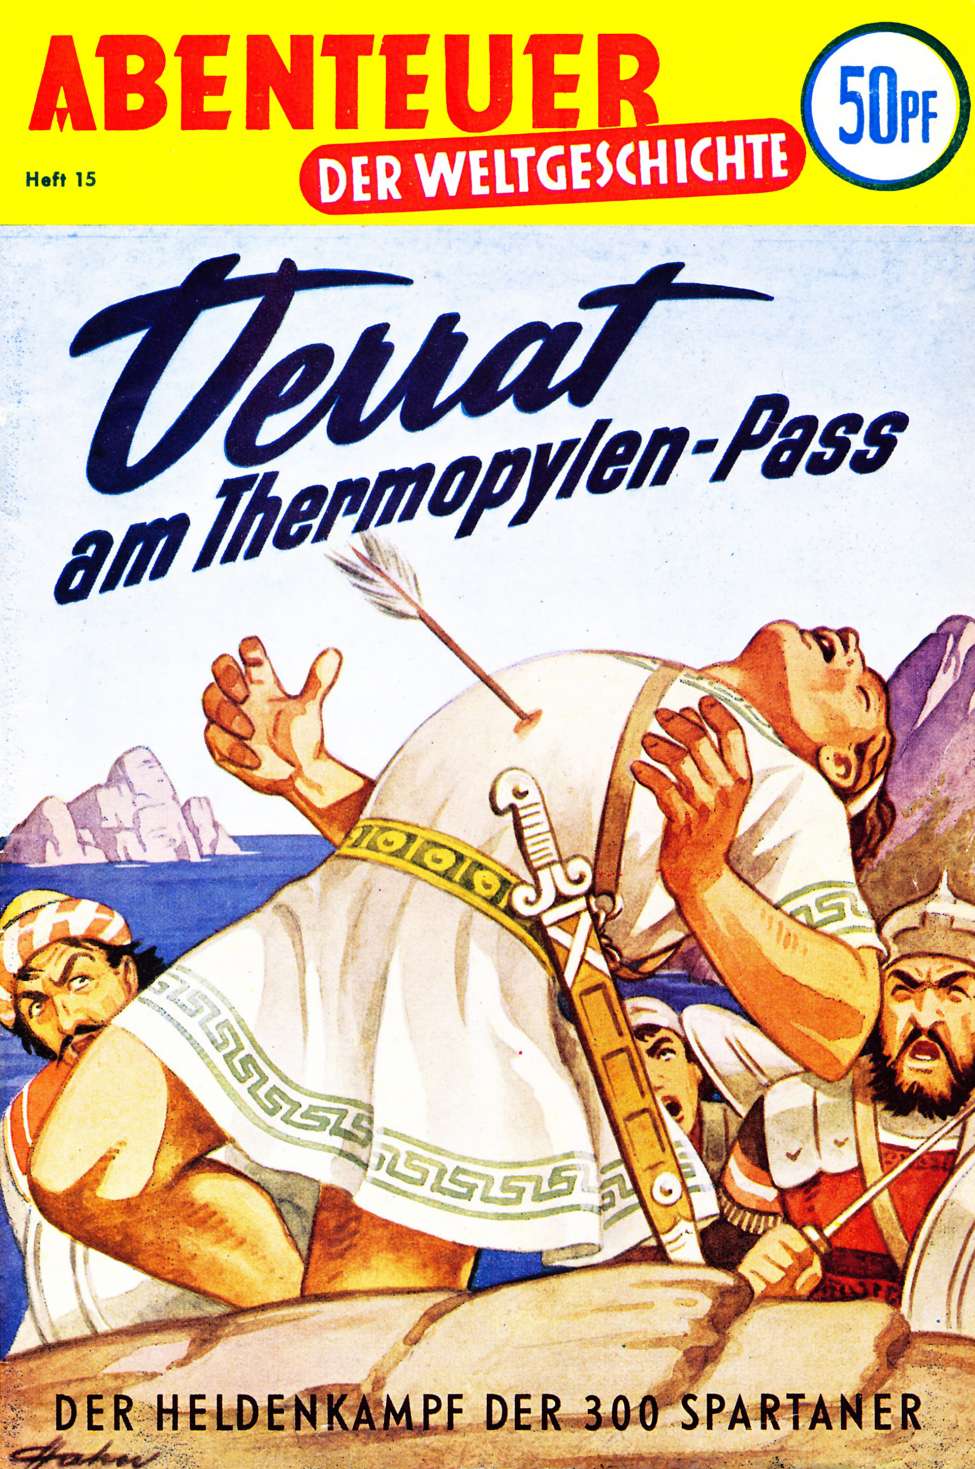 Book Cover For Abenteuer der Weltgeschichte 15 - Verrat am Thermopylen-Pass